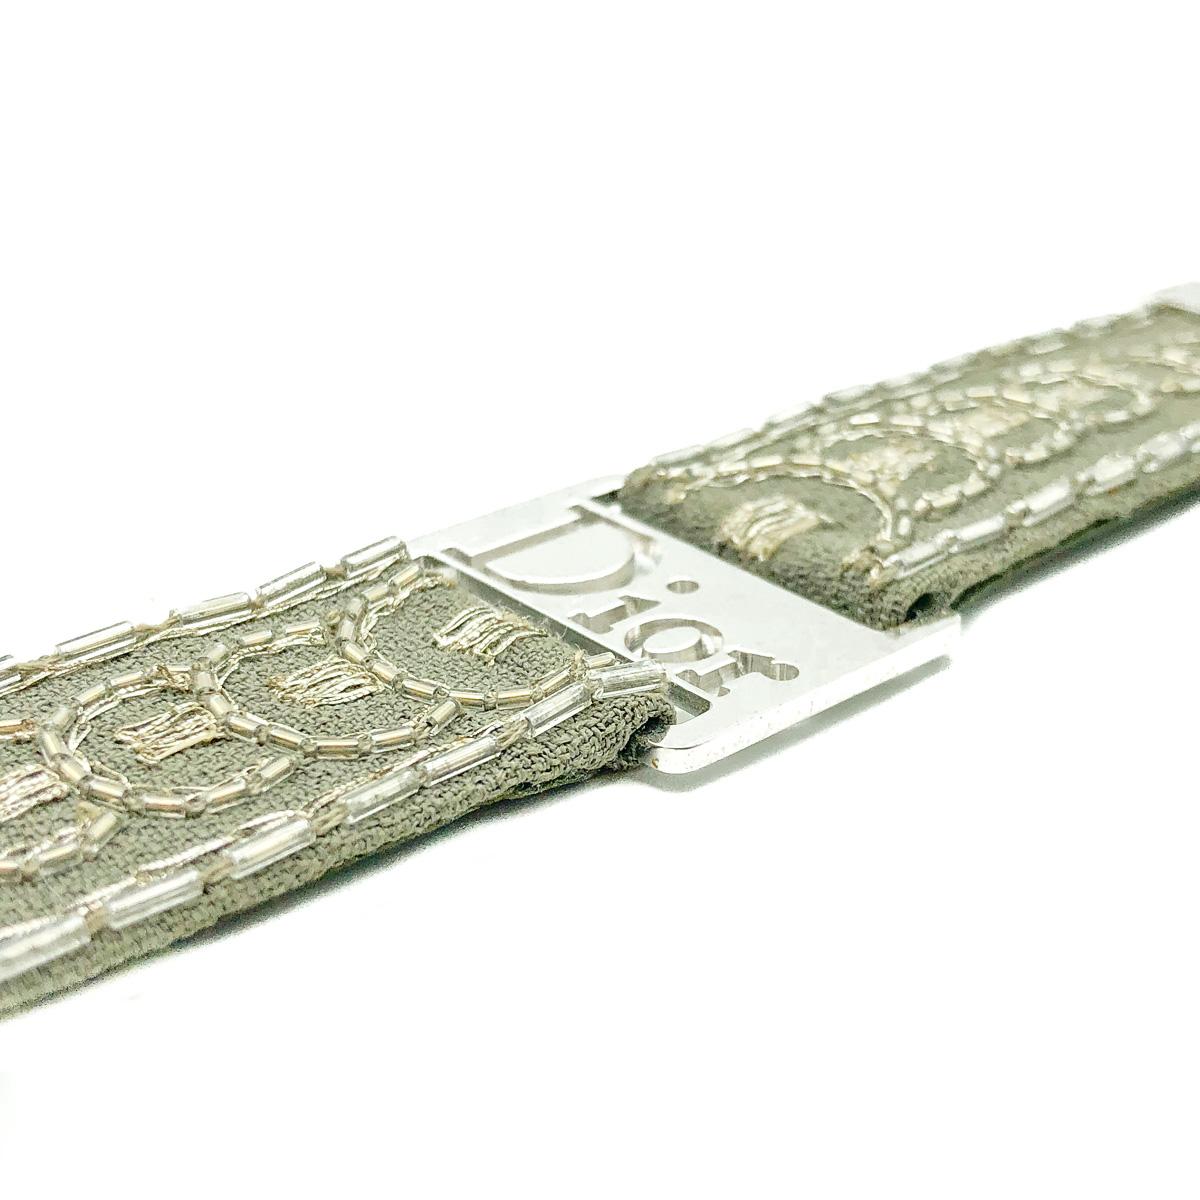 Une déclaration ultra cool avec ce bracelet Vintage Dior Khaki Strap.
Il est doté d'une sangle brodée en tissu gris kaki et d'une quincaillerie plaquée rhodium de très haute qualité. L'extrémité plaquée rhodium et la grande plaque du logo Dior font